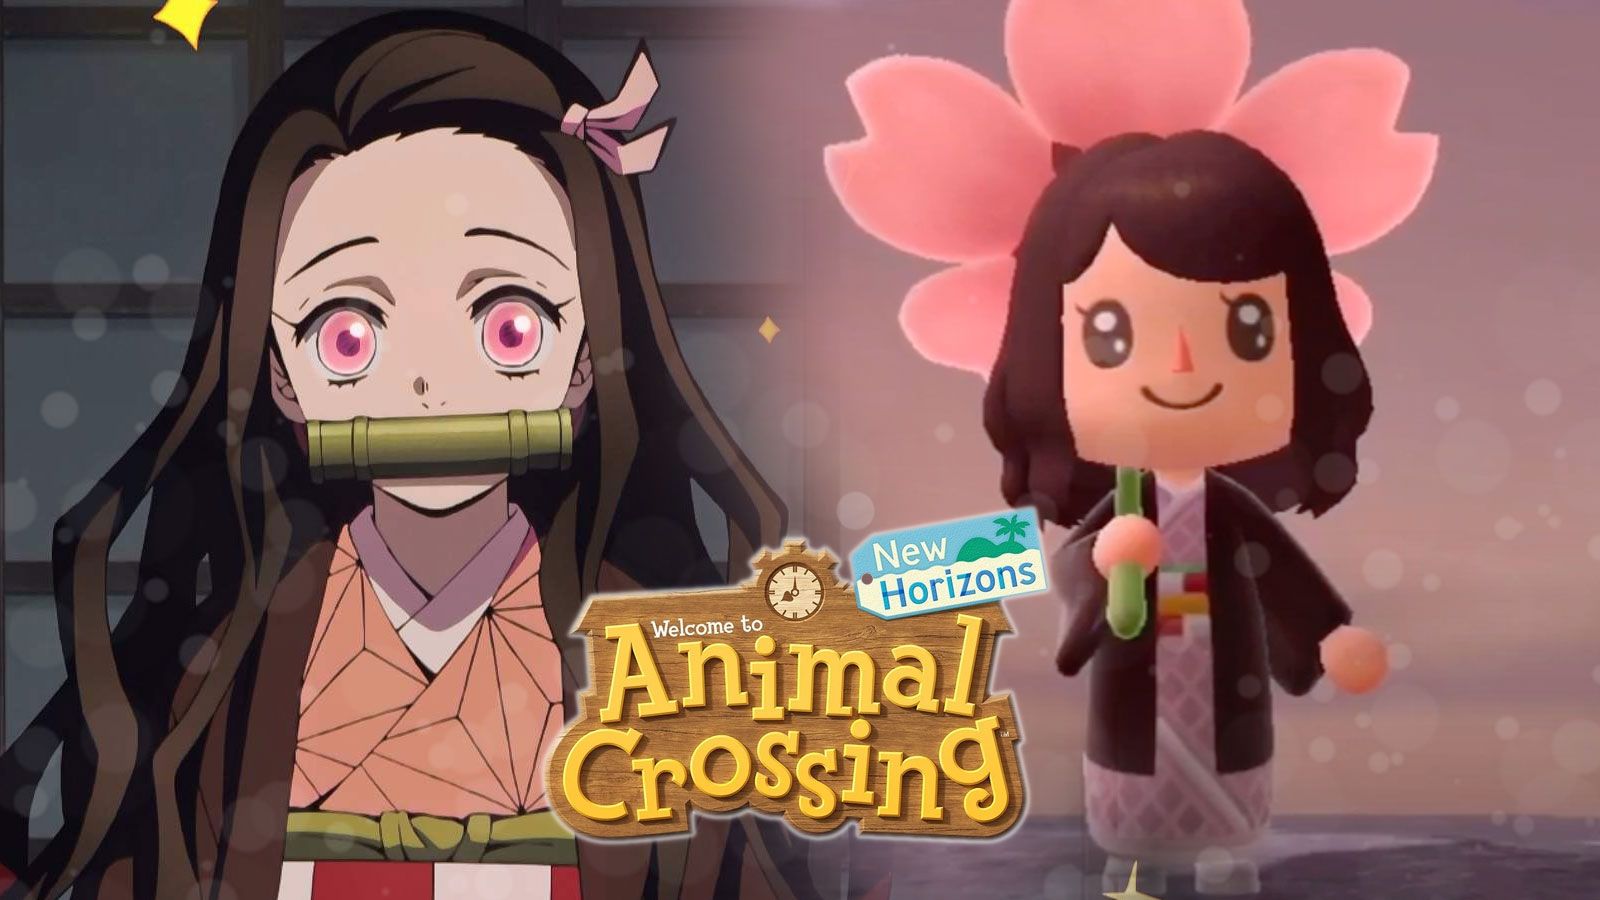 Hymne Demon slayer Kimetsu no Yaiba Op  Animal Crossing New Horizons   YouTube